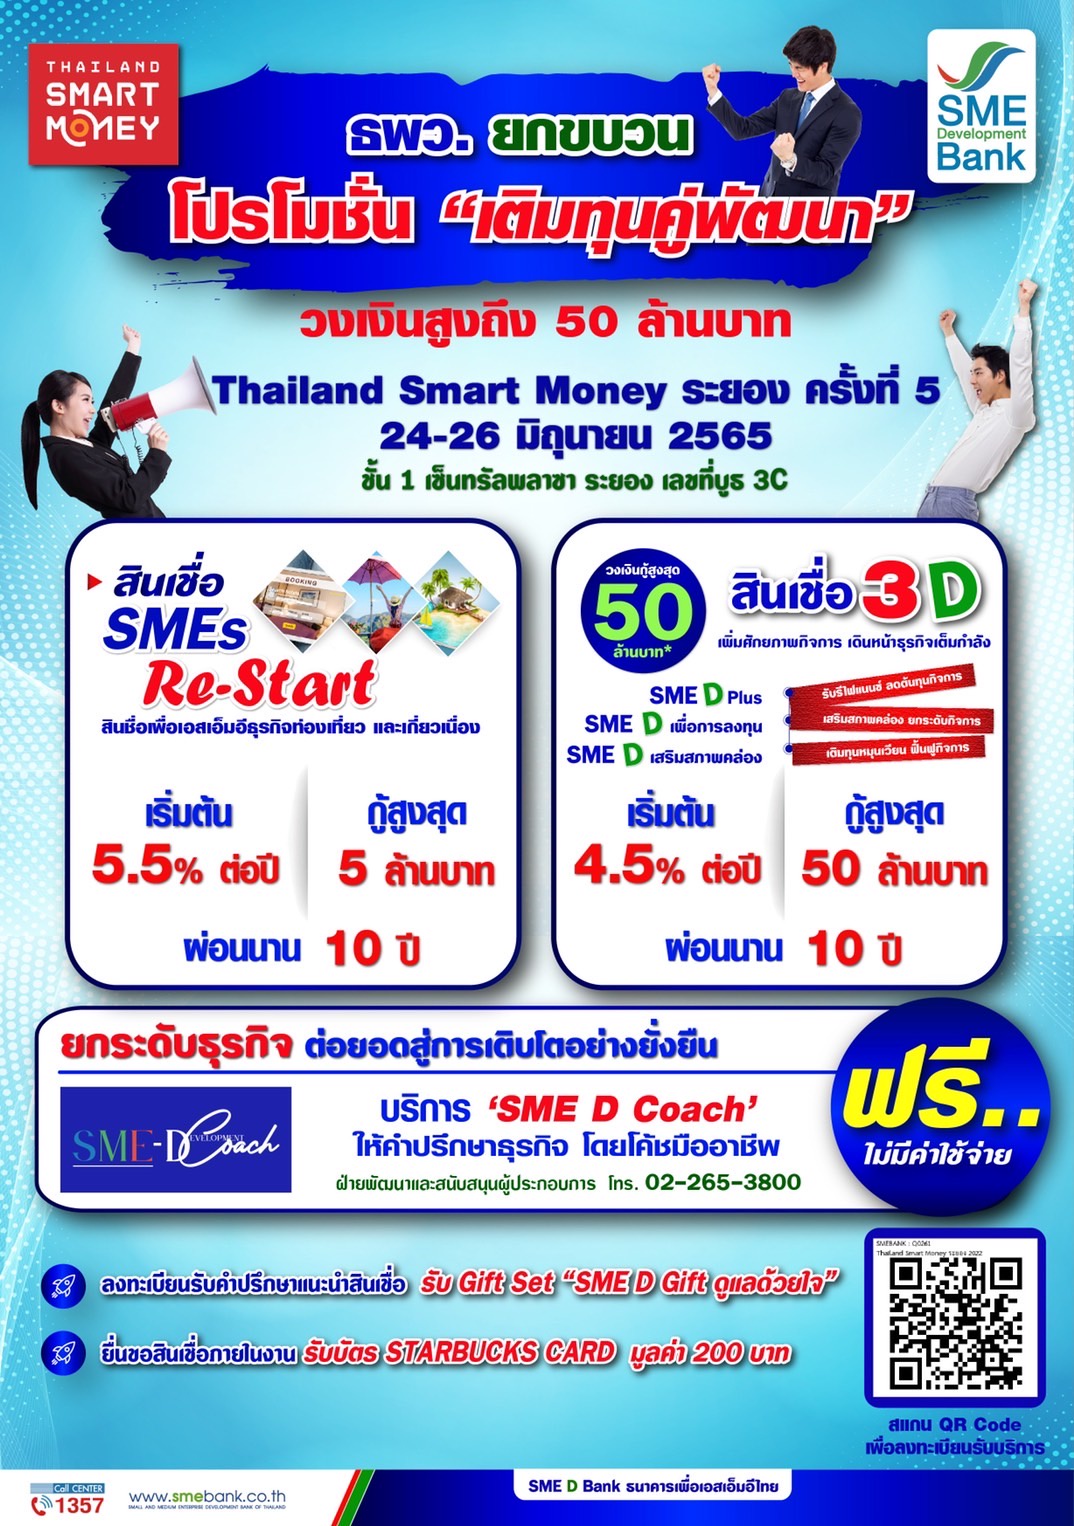 ธพว. เดินหน้าหนุนเอสเอ็มอีไทยเต็มกำลัง ยกขบวนสินเชื่อ วงเงินกู้สูง 50 ลบ. จัดเต็มในงาน 'Thailand Smart Money RAYONG' พบกัน 24-26 มิ.ย.65 บูธ